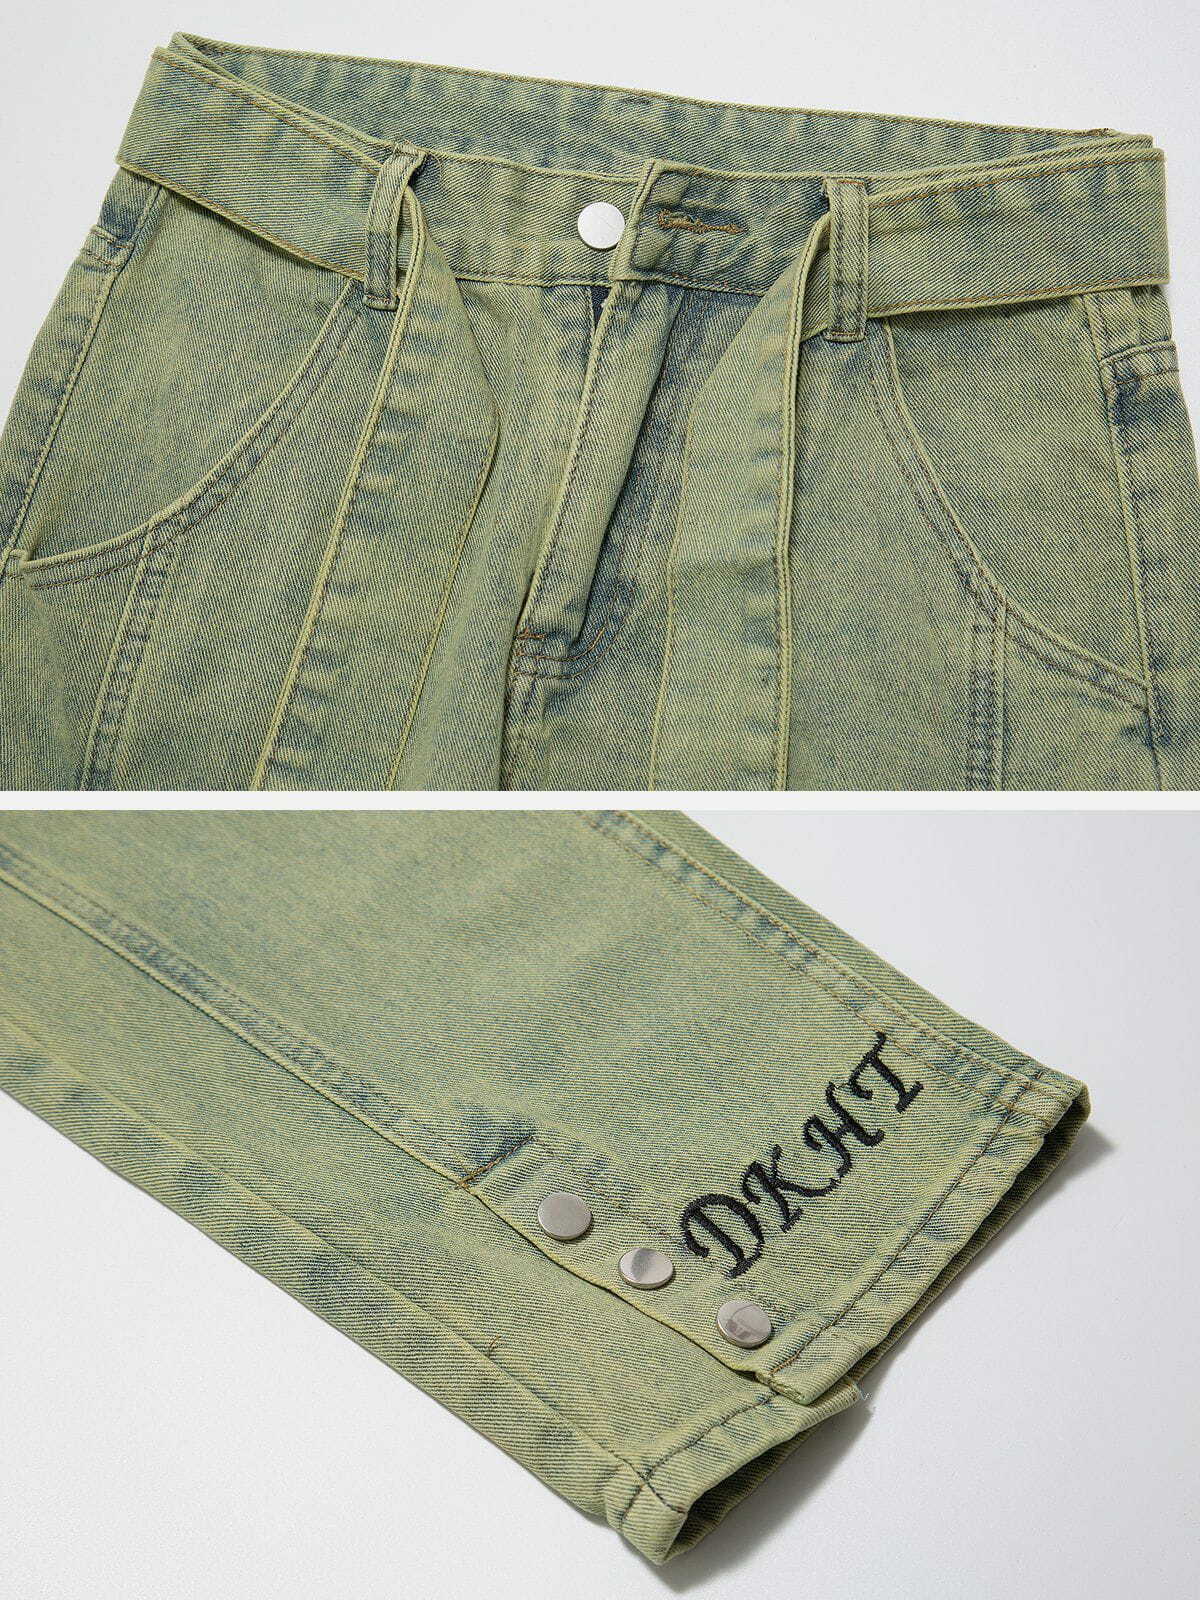 retro washed button slit jeans edgy & stylish denim 8475